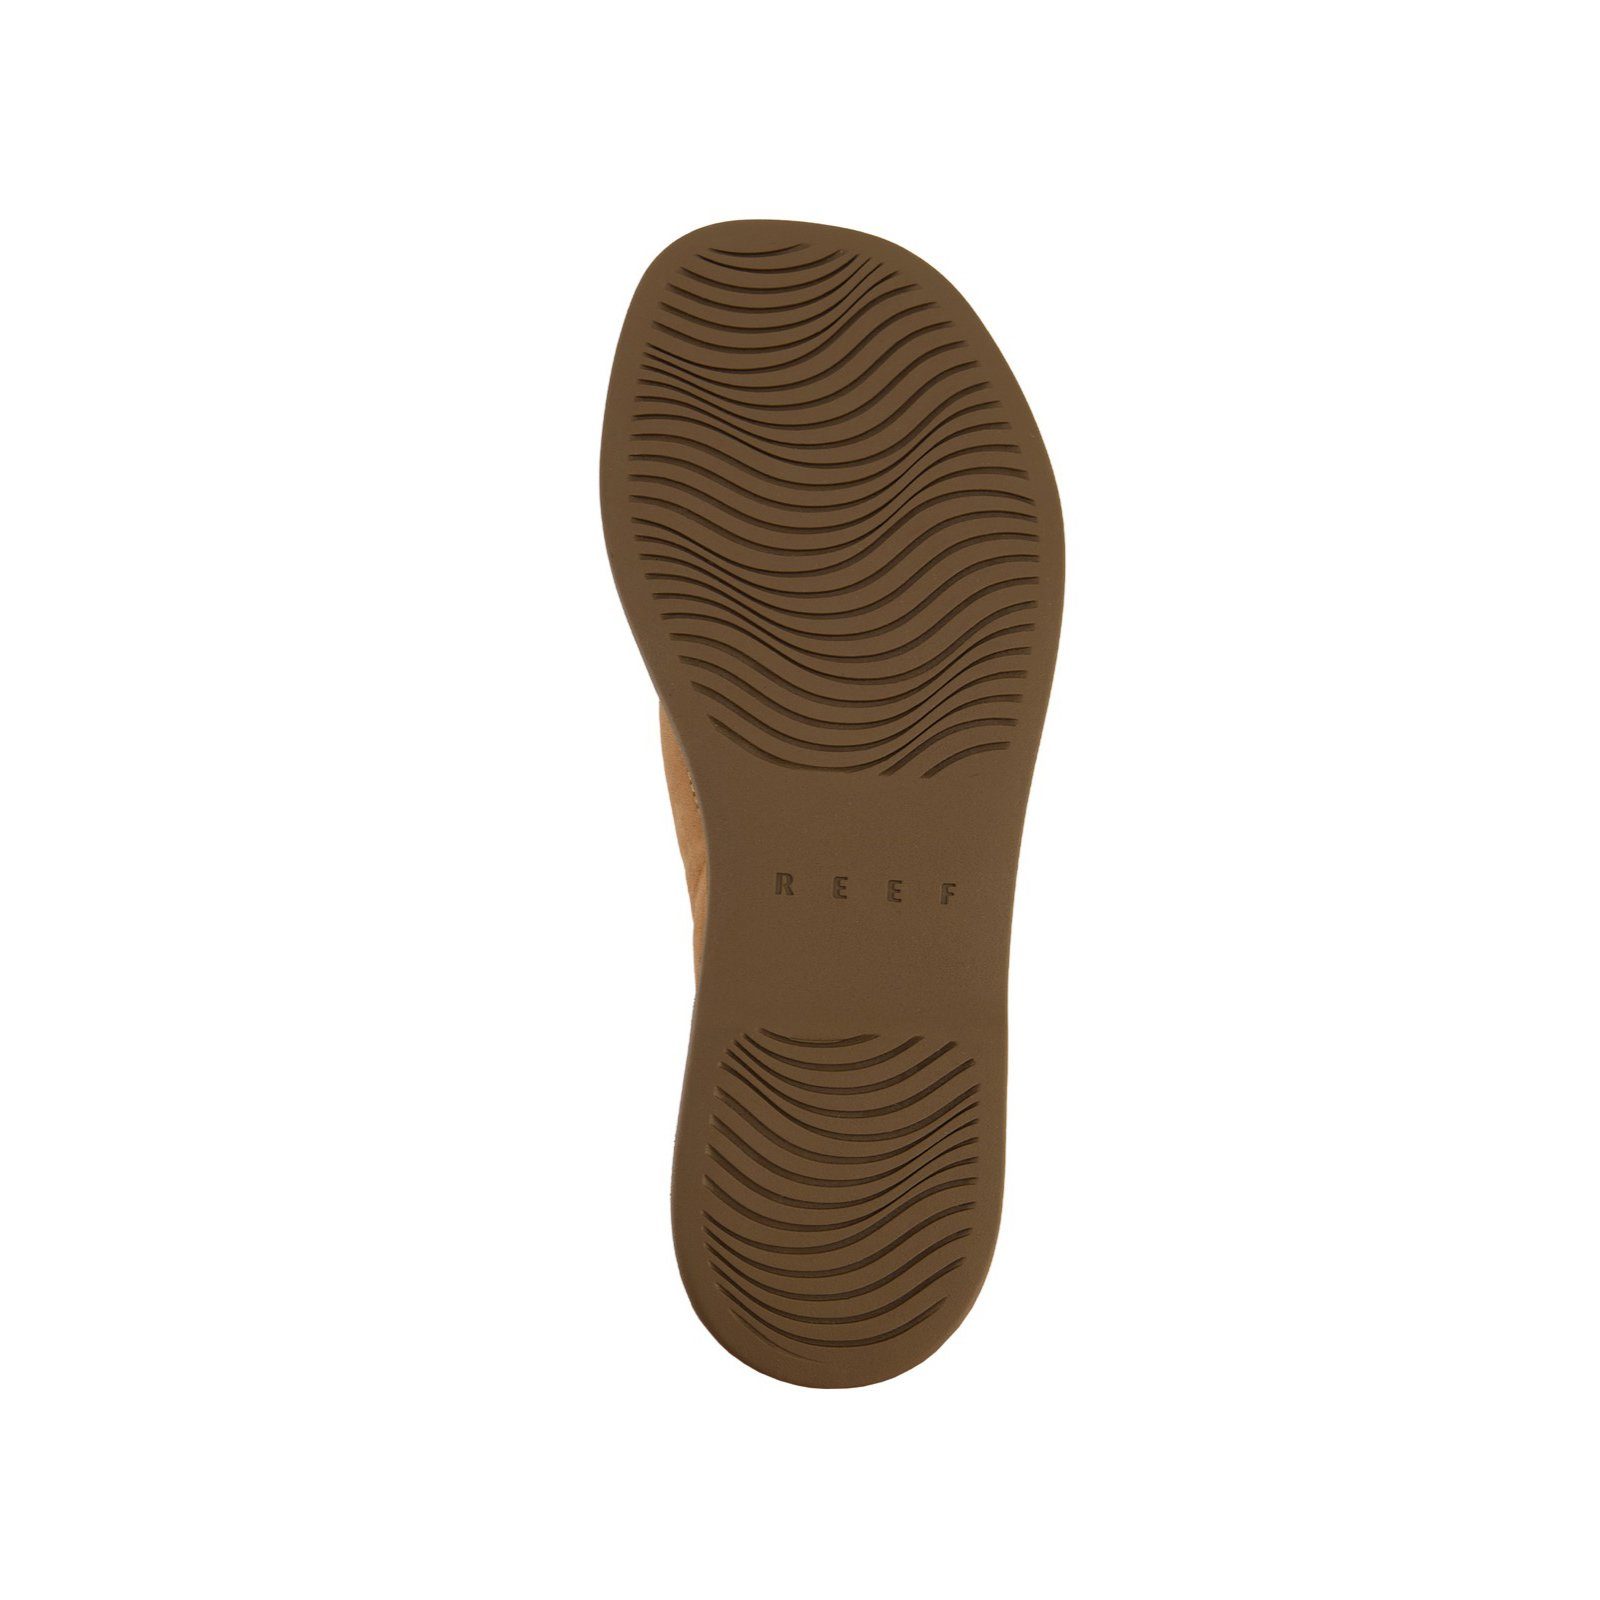 Reef Zehentrenner Anatomisch (1-tlg) Decksohle geformtes Fußbett, Griffige Gepolstere EVA Leichte Lux Lofty Natural Laufsohle, Sandale Zehentrenner Sohle